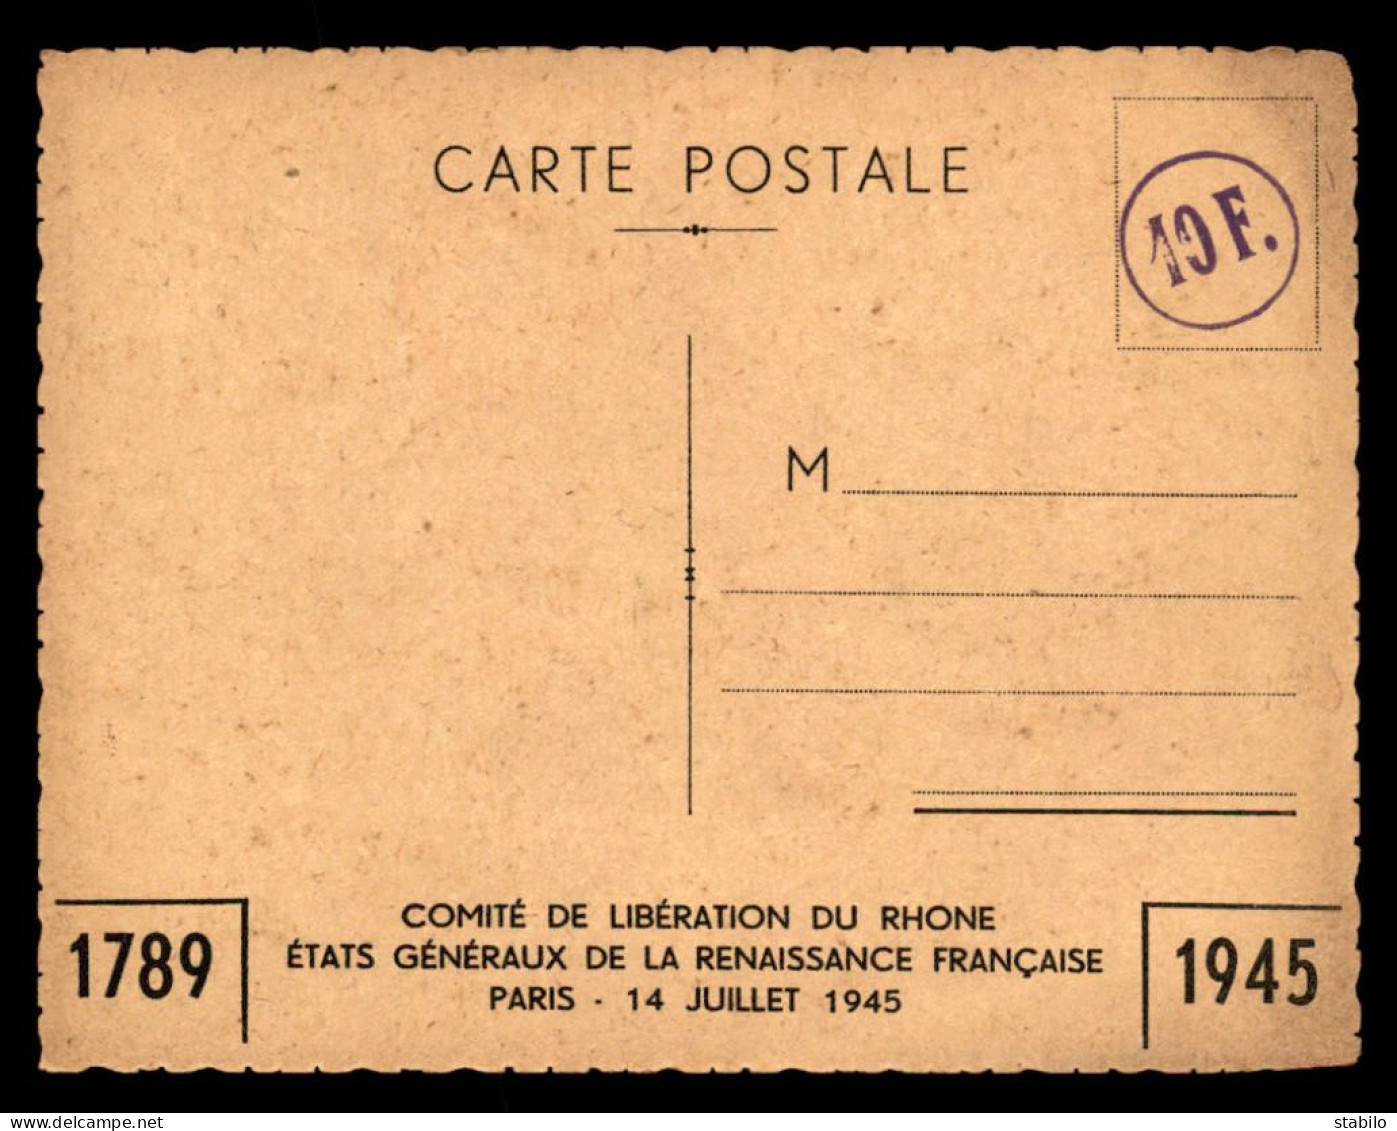 GUERRE 39/45 - ILLUSTRATEURS - KLEBER - ASSISE NATIONALE DE LA PAIX, PARIS 27-28 NOVEMBRE - 1789-1945 - War 1939-45